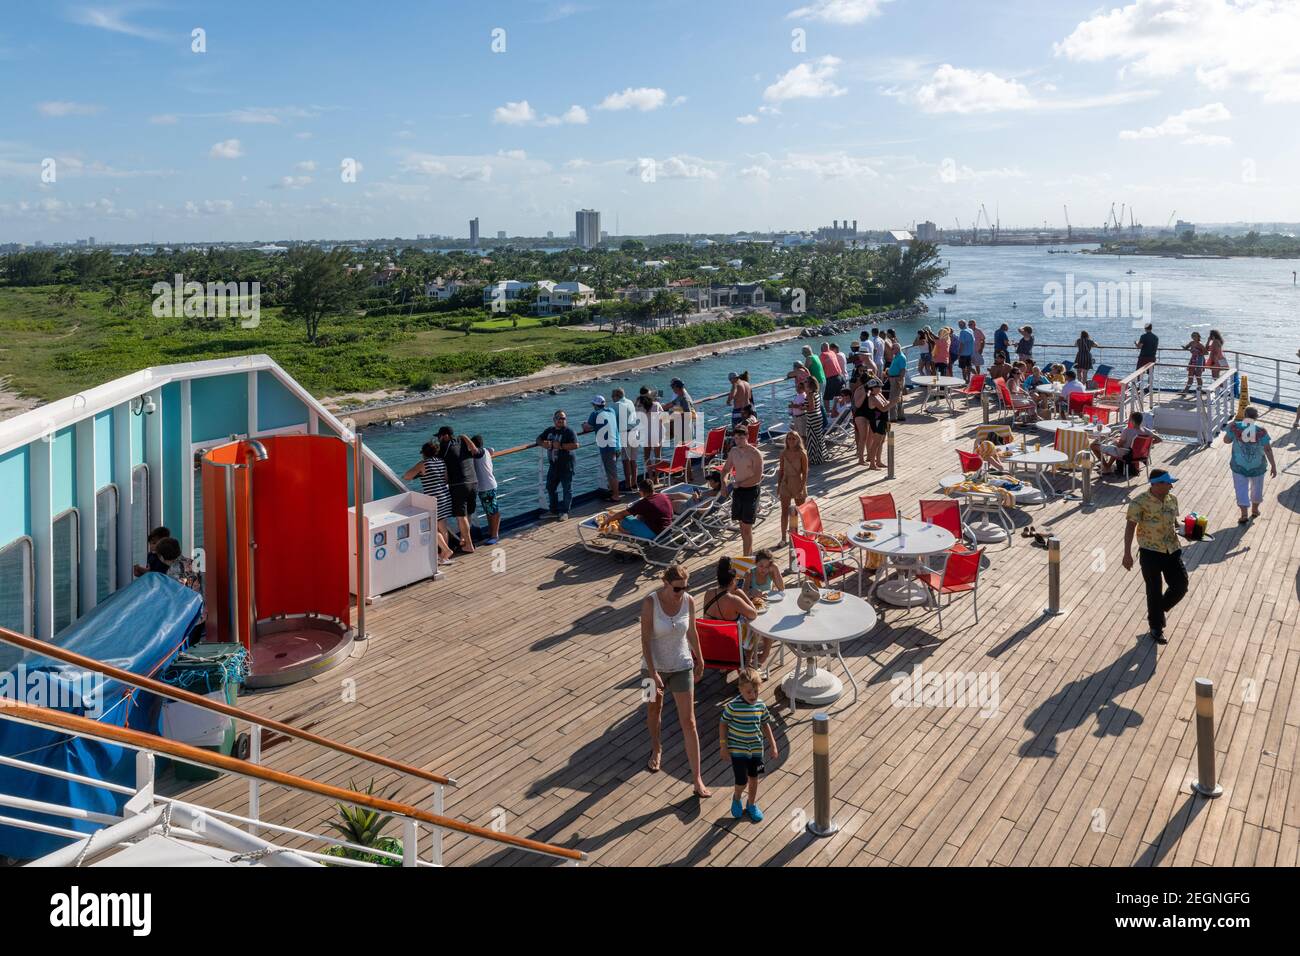 Touristes sur le pont du Grand Celebration Cruise Ship de Bahamas Paradise Cruise Line, Palm Beach, États-Unis Banque D'Images